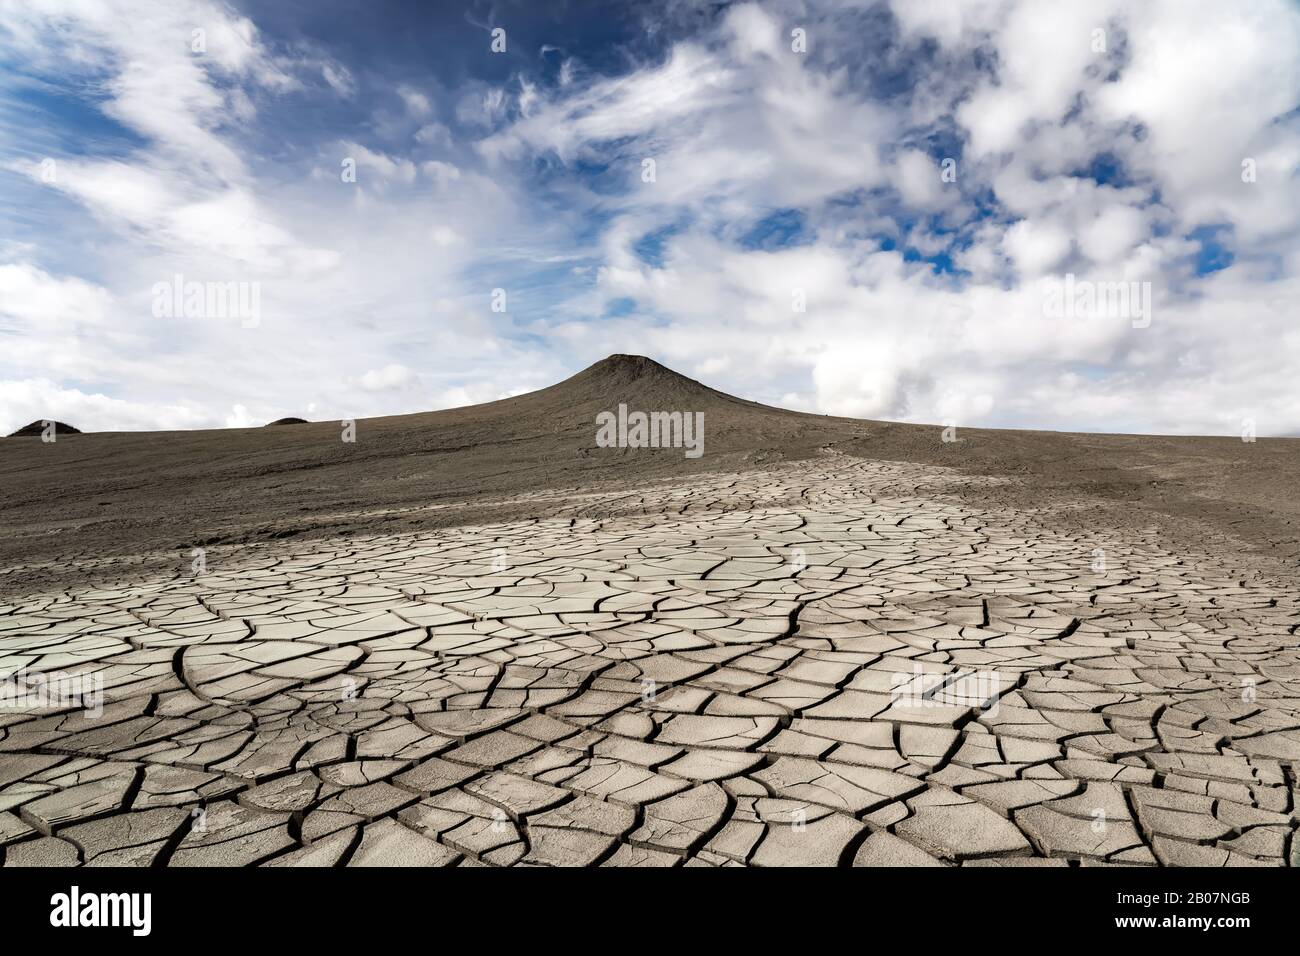 Mud volcano, amazing natural phenomenon Stock Photo